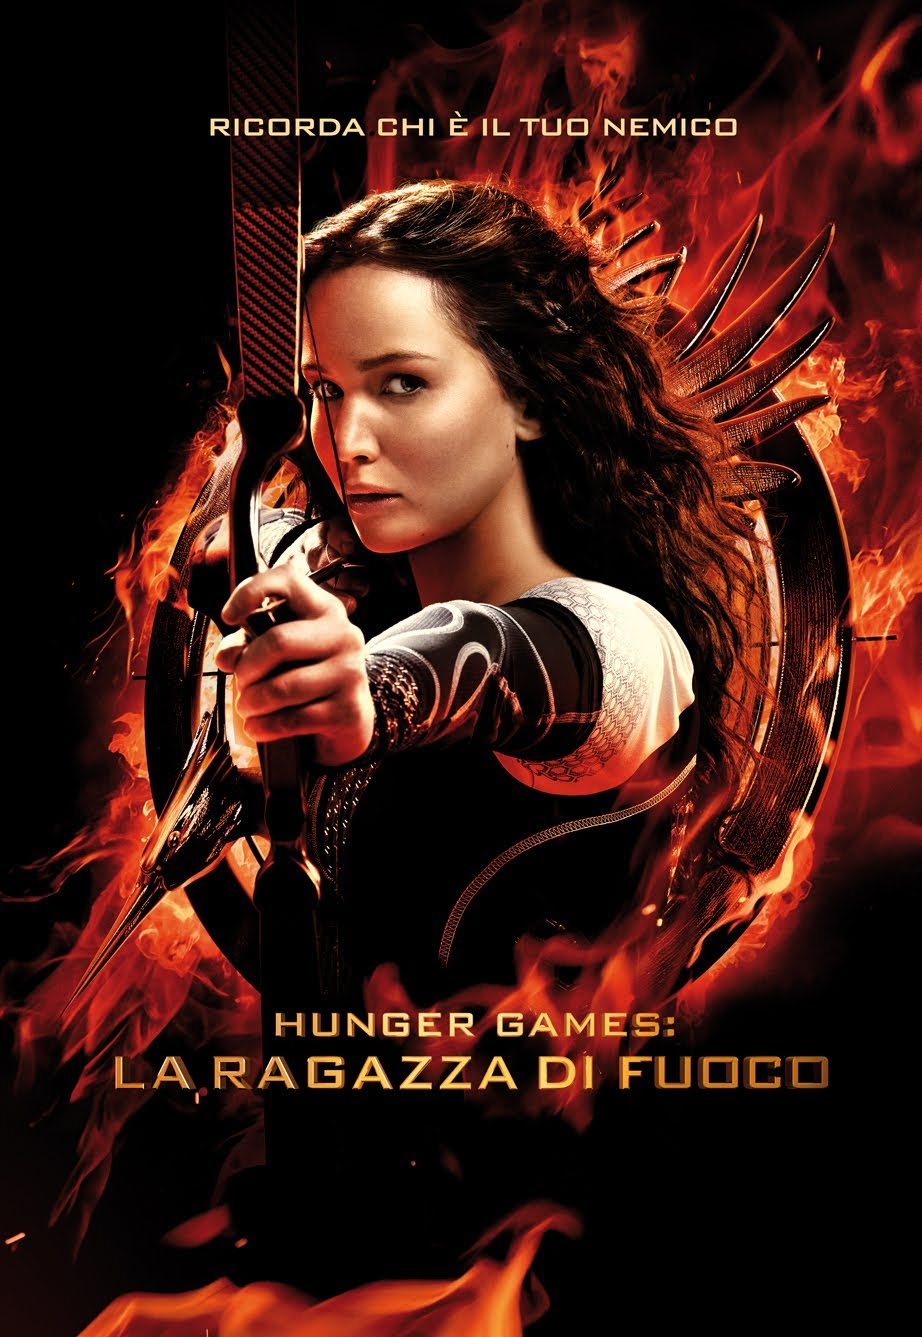 Hunger Games: La ragazza di fuoco [HD] (2013)